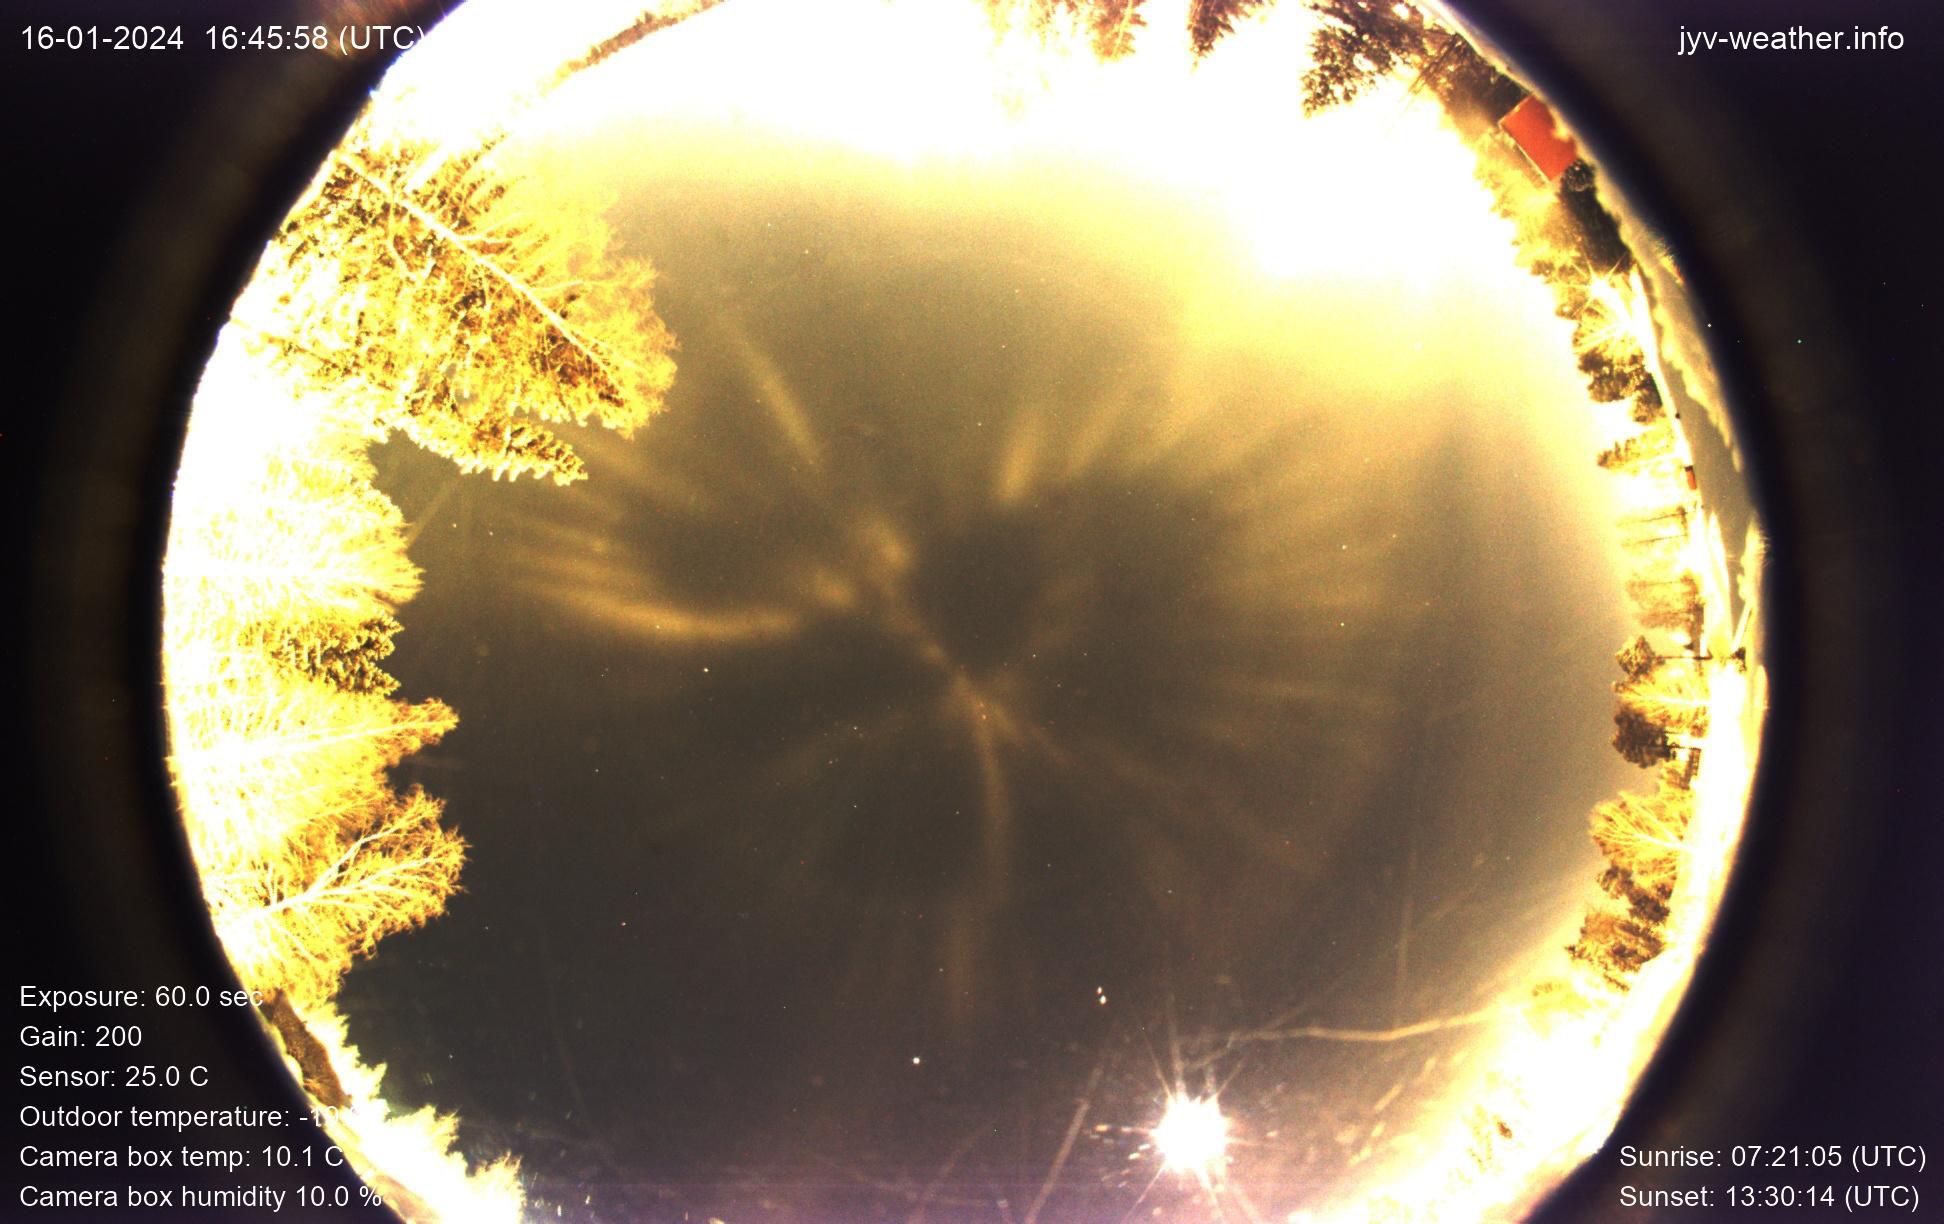 صورة بانوراميّة 360 درجة تُظهر السماء تنعكس فيها أنوار تقابل الأضواء على الأرض وفي محيط الدائرة الأشجار والمنازل